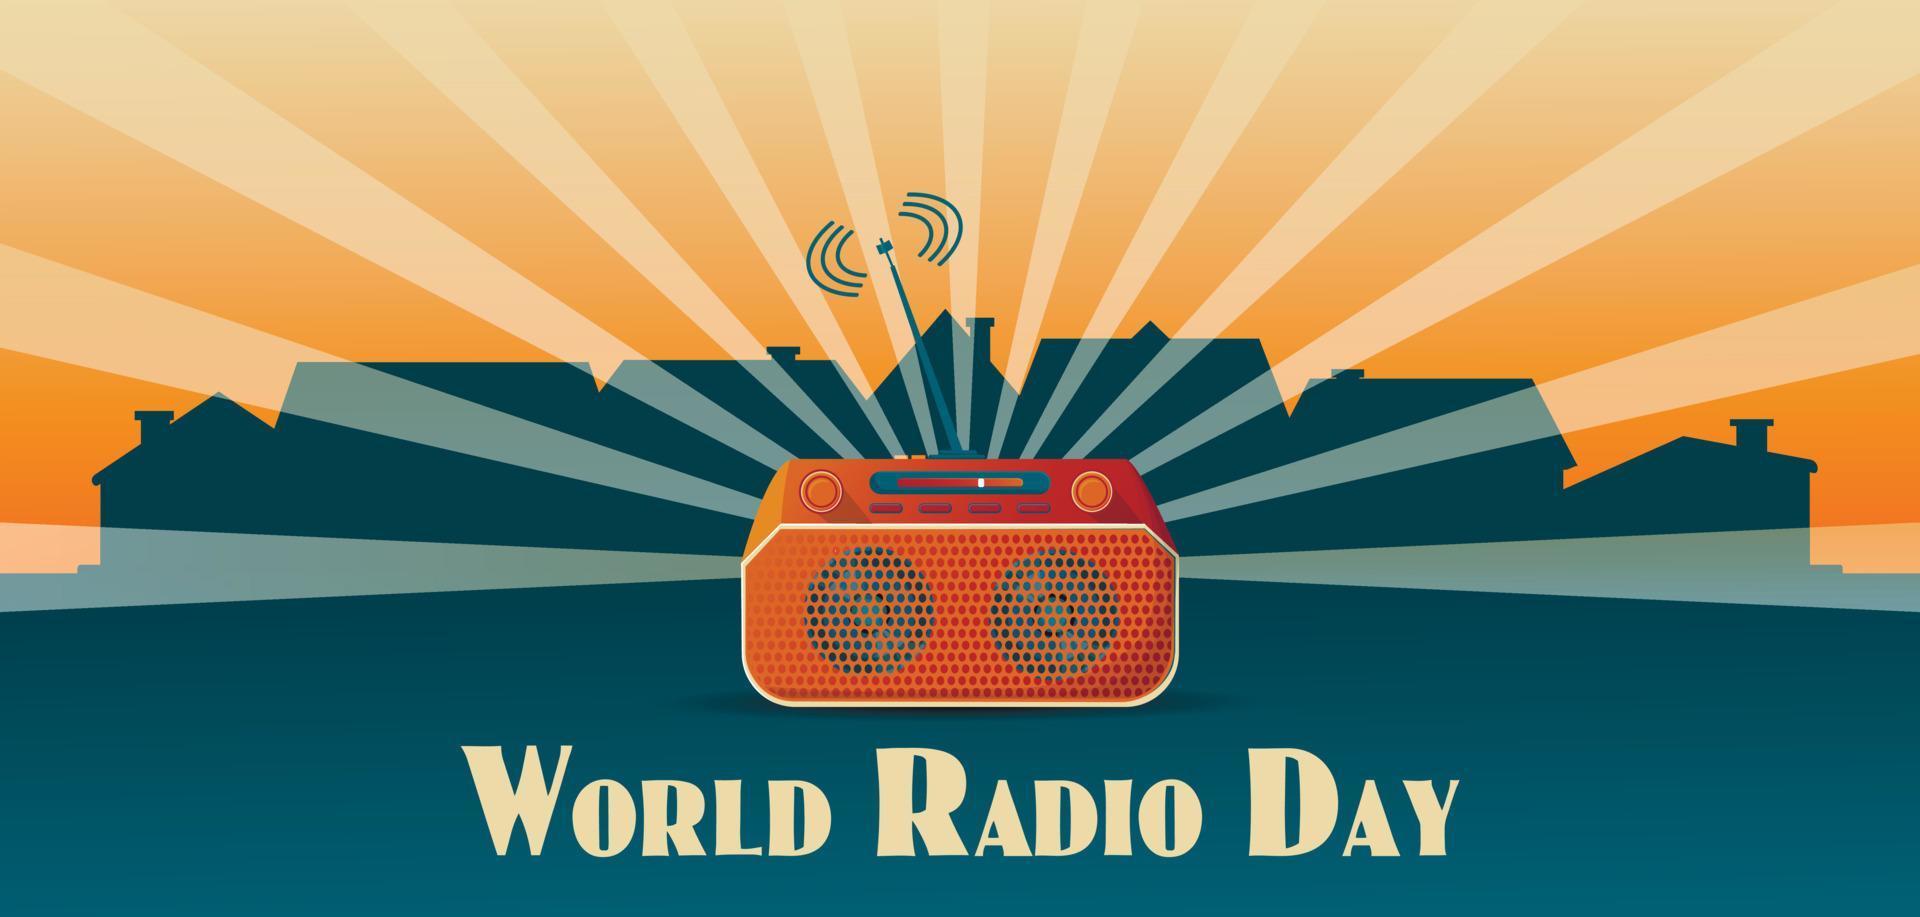 banner ou cartaz para o dia mundial do rádio com sistema estéreo de cassete retrô no fundo da cidade com letras de conceito vetor